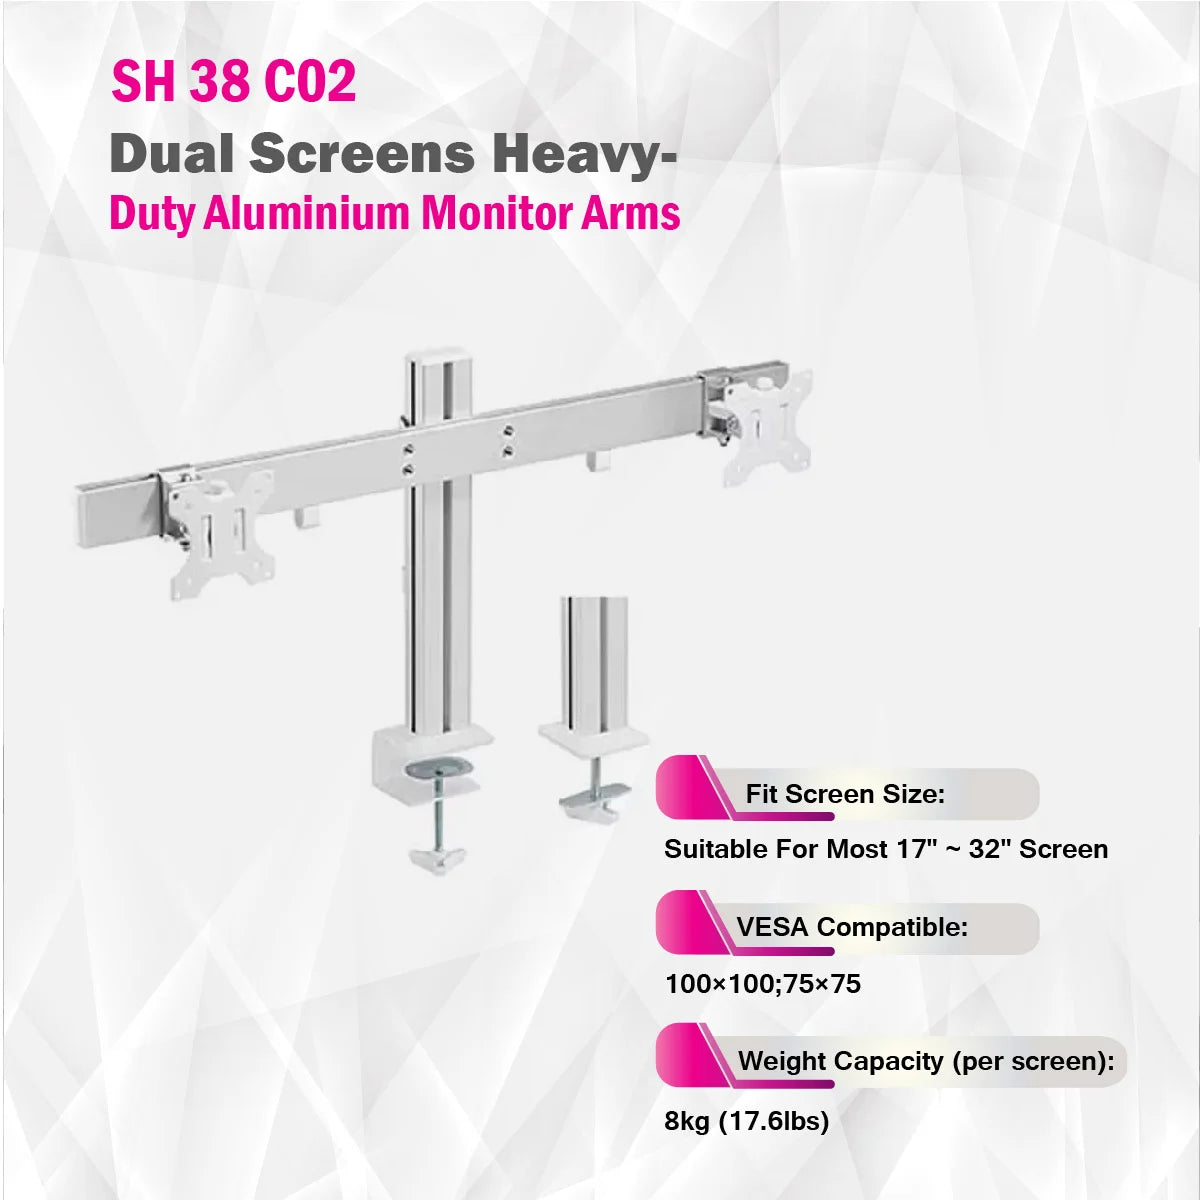 Skill Tech SH38 C02 - Dual Screens Heavy-Duty Aluminium Monitor Arms